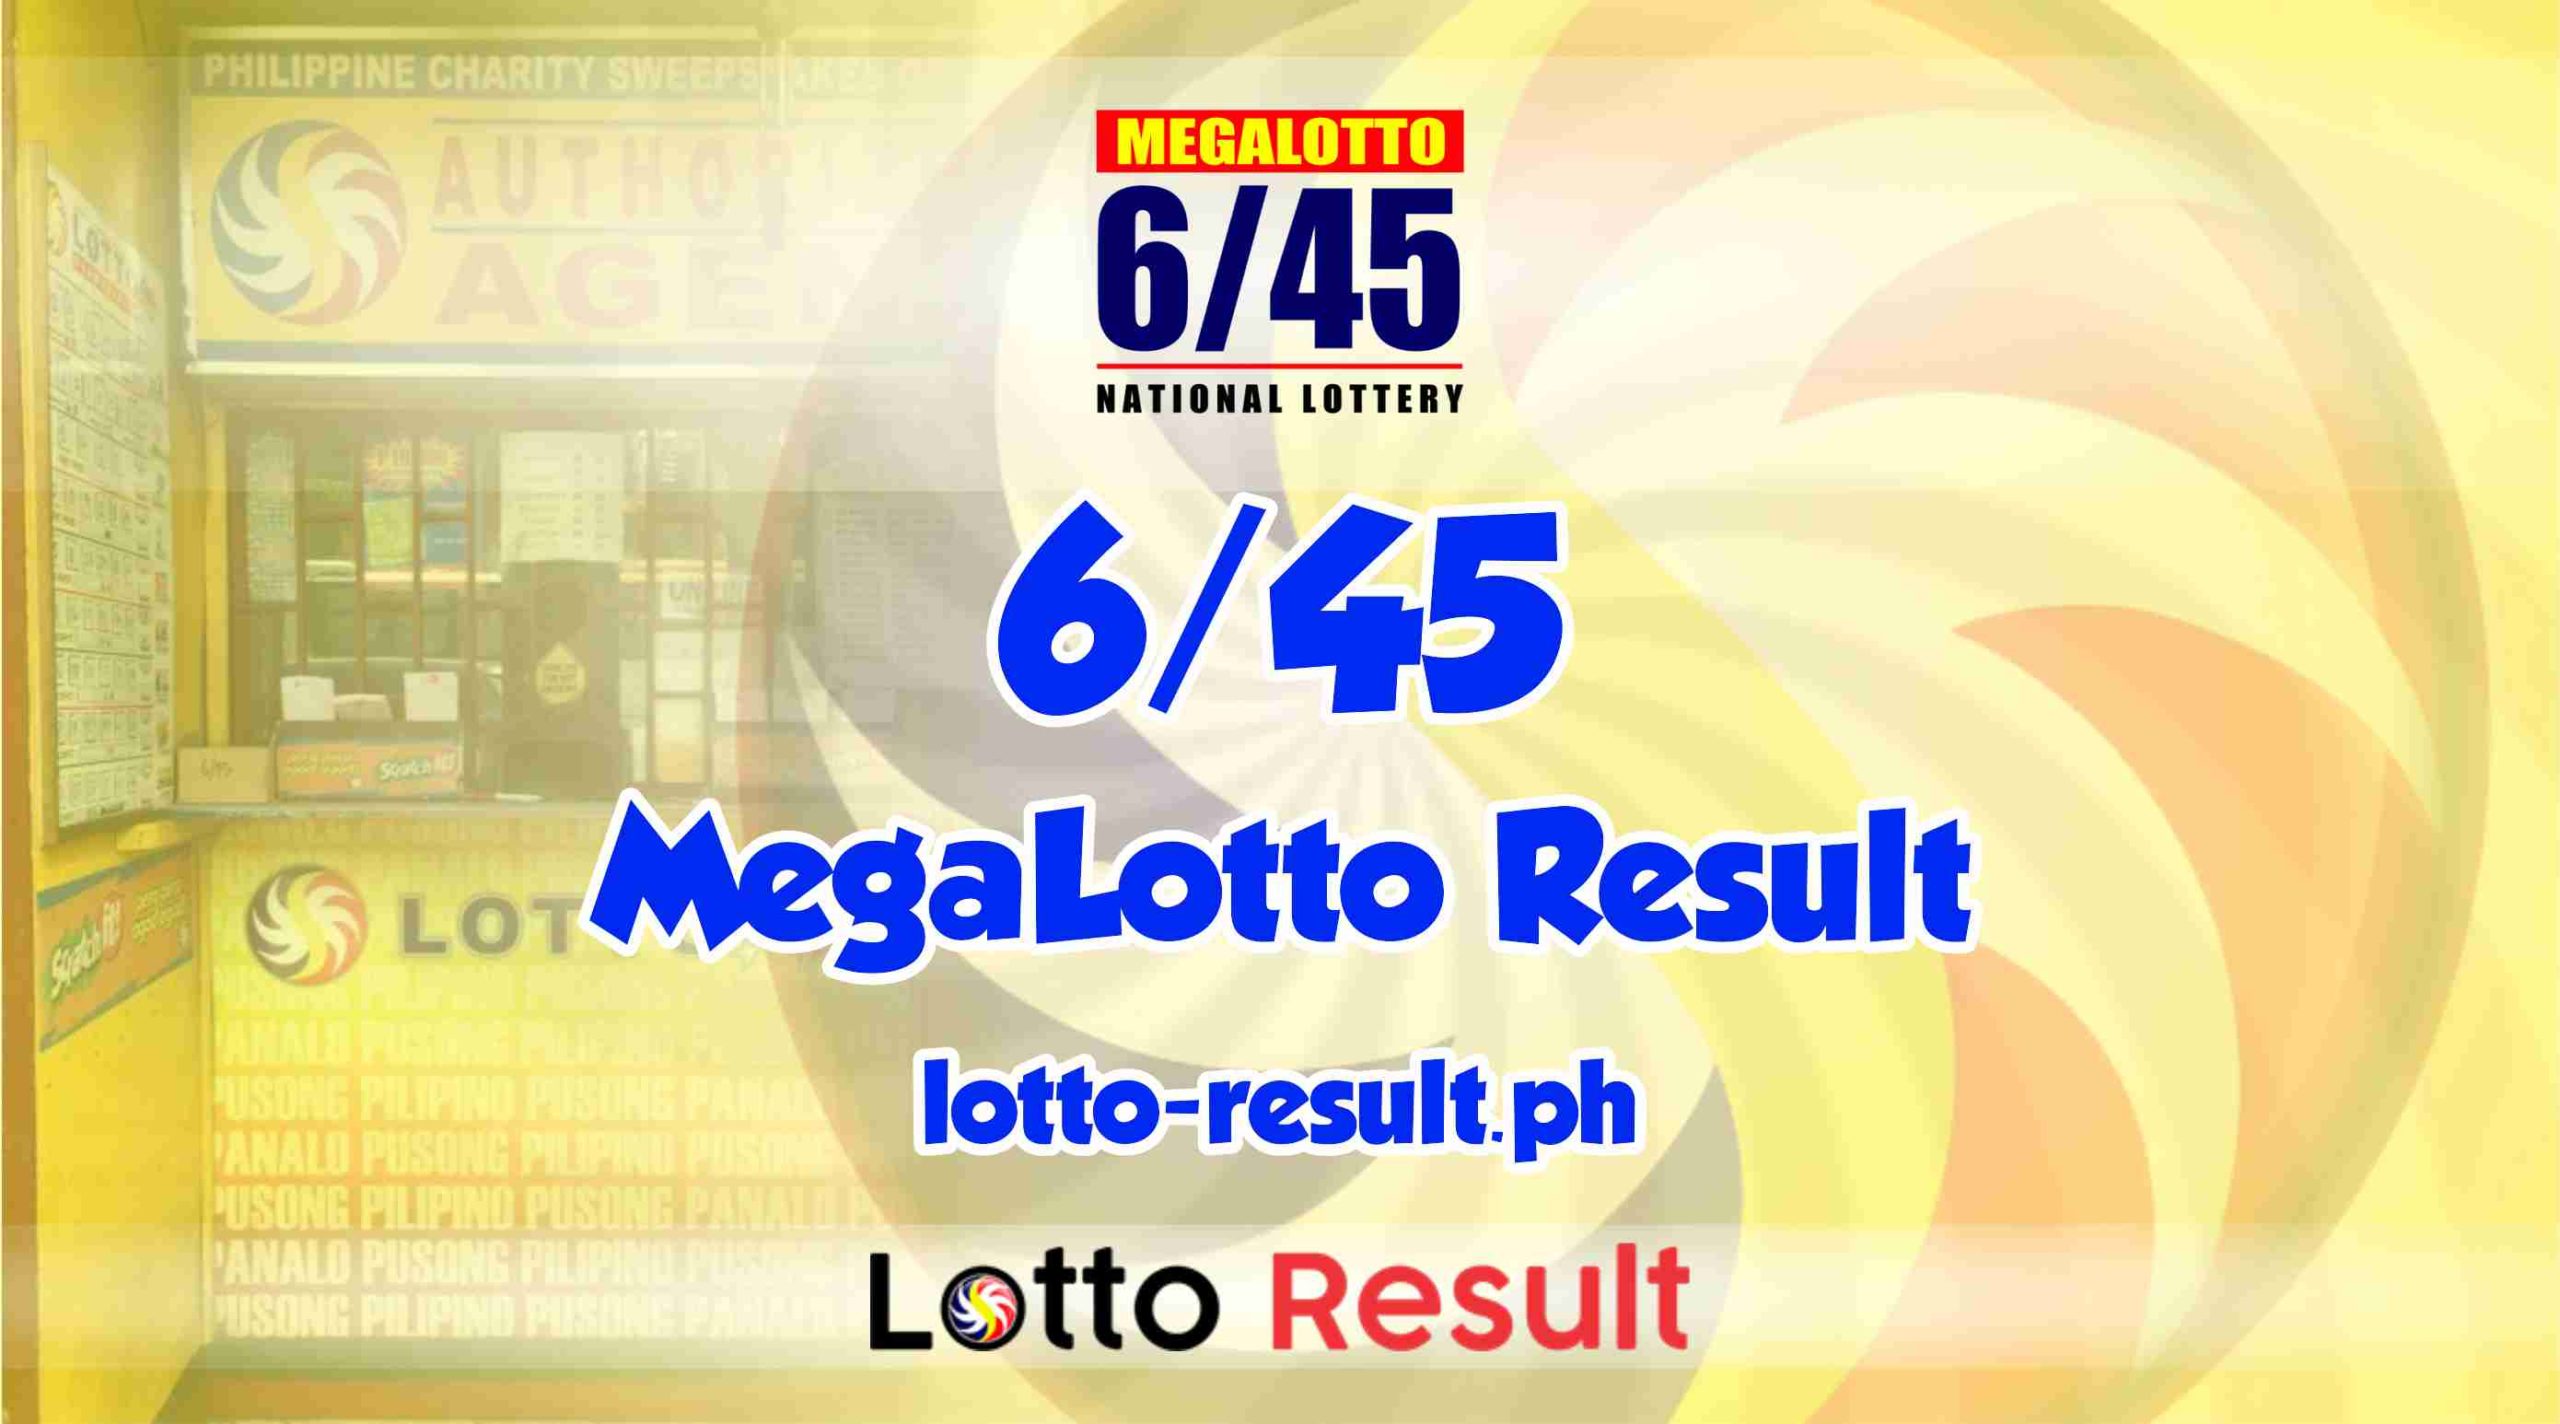 summary of 6/45 lotto result